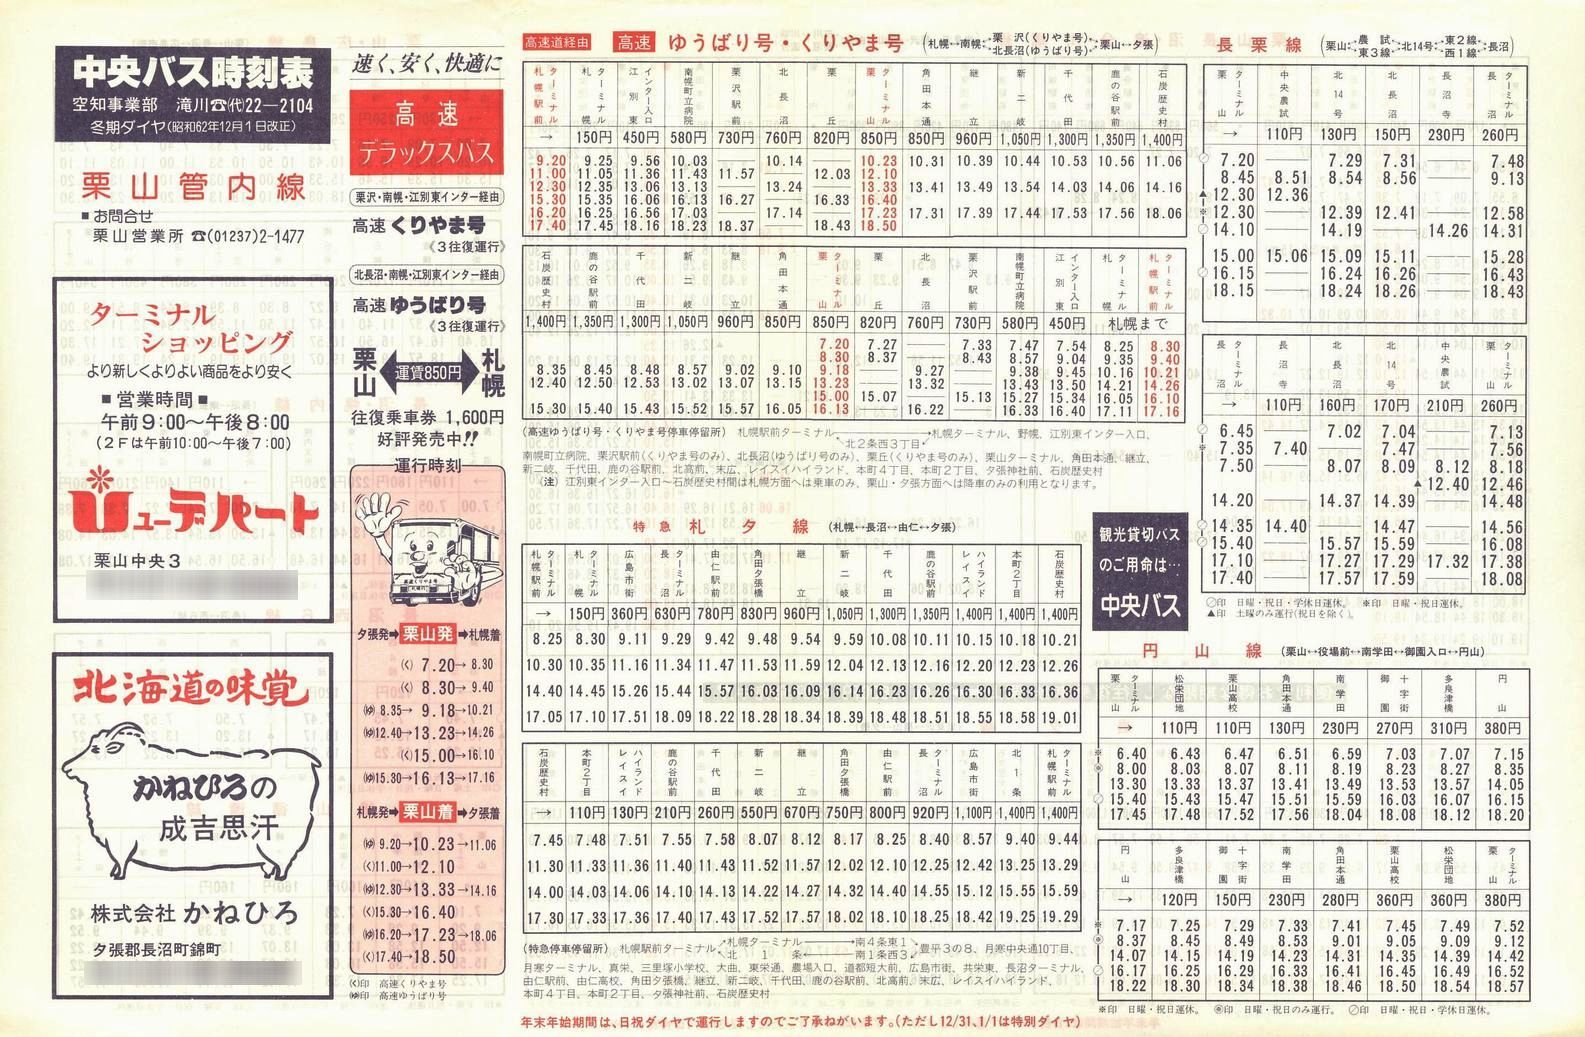 1987-12-01改正_北海道中央バス(空知)_栗山管内線時刻表表面